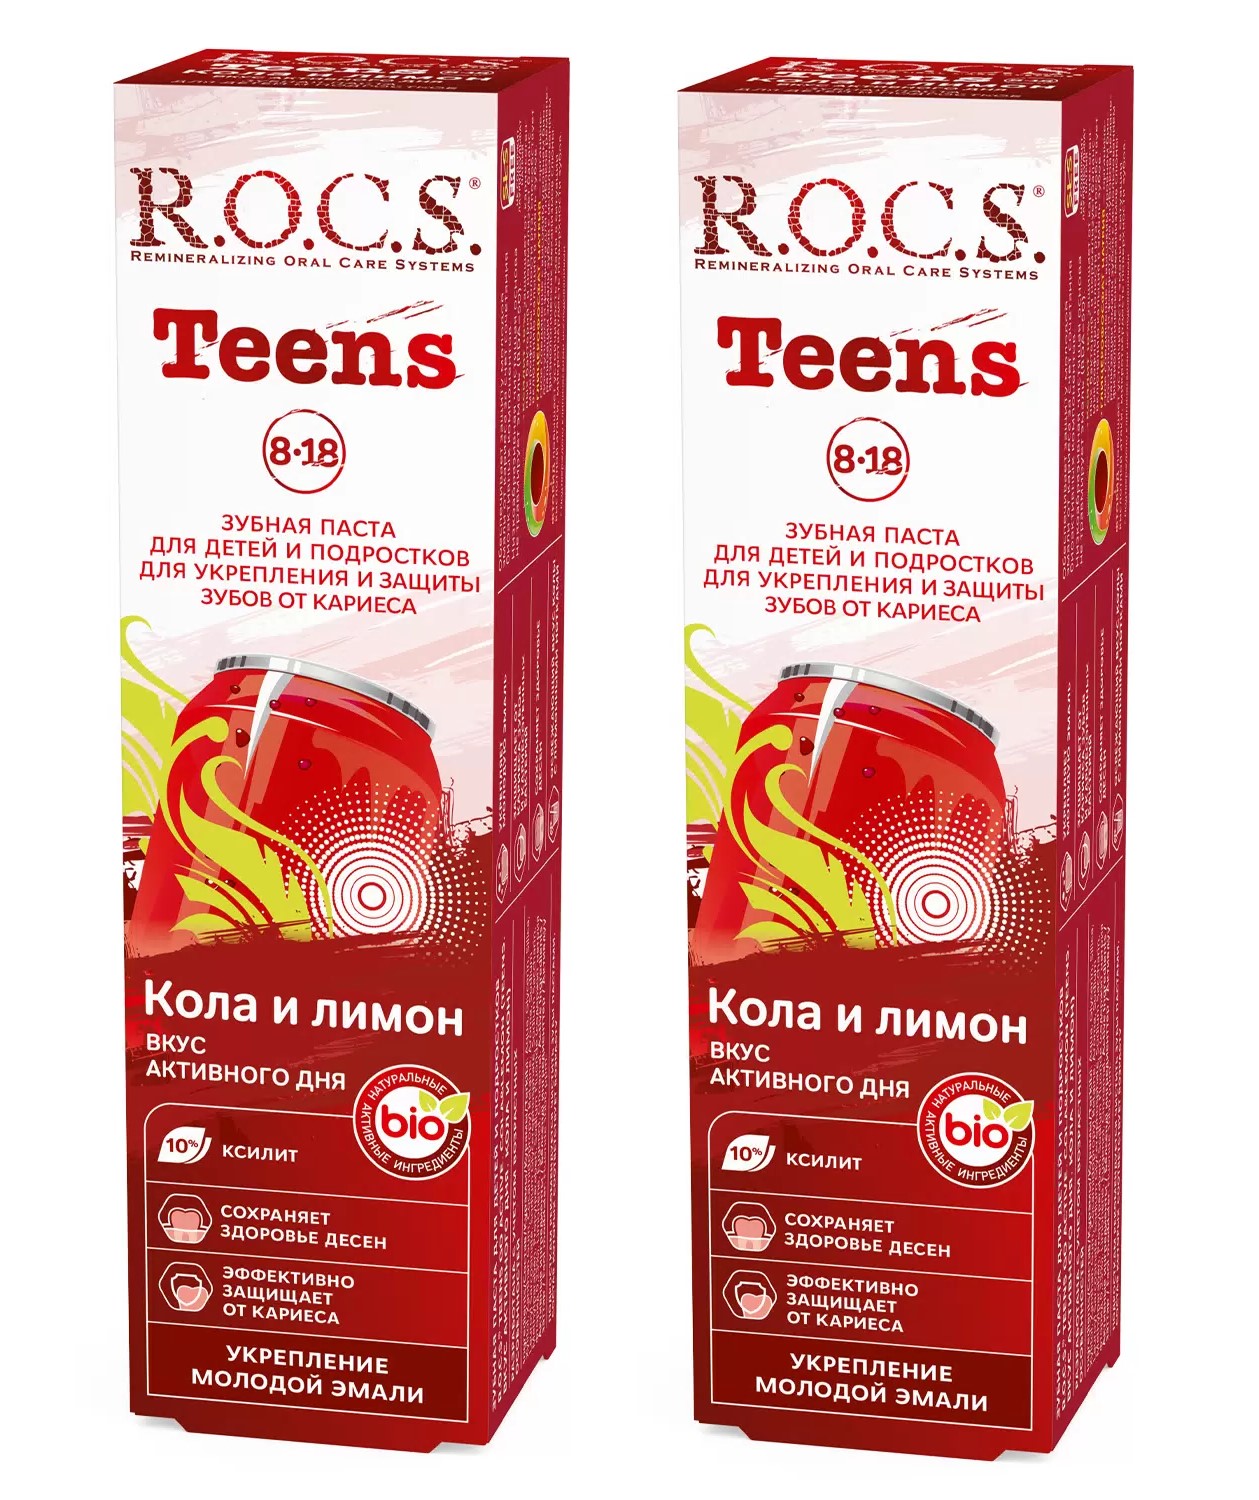 Зубная паста для школьников ROCS TEENS КОЛА и ЛИМОН, 74 гр (в наборе 2 штуки) зубная паста для школьников rocs teens кола и лимон 74 гр в наборе 2 штуки